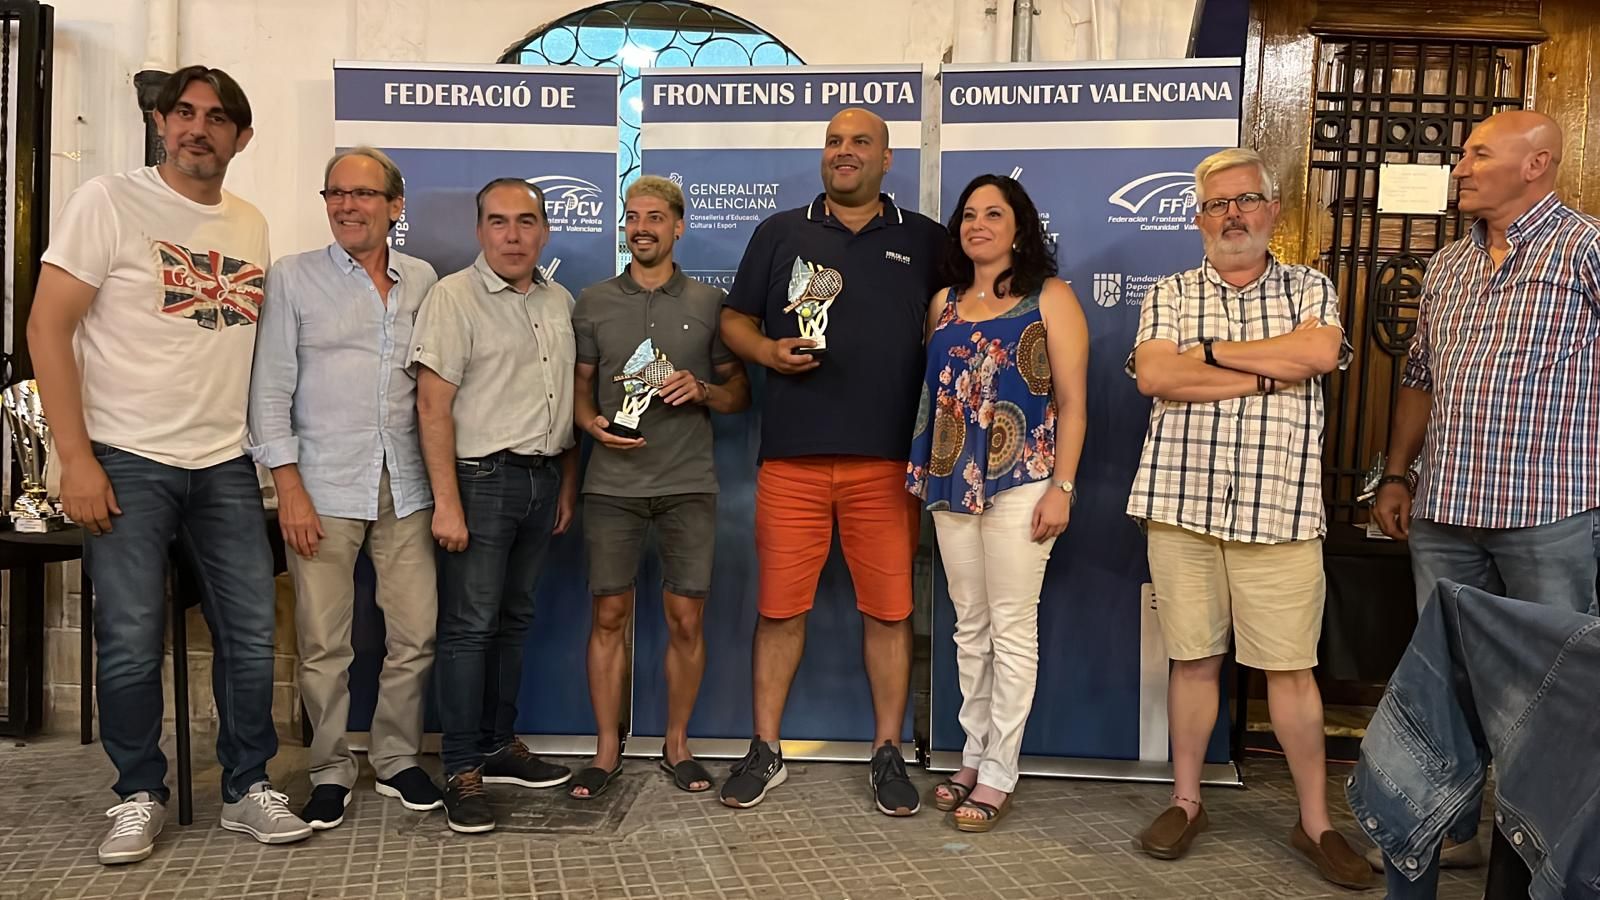 Gala de la Federación Frontenis Pelota de la Comunitat Valenciana en Jérica